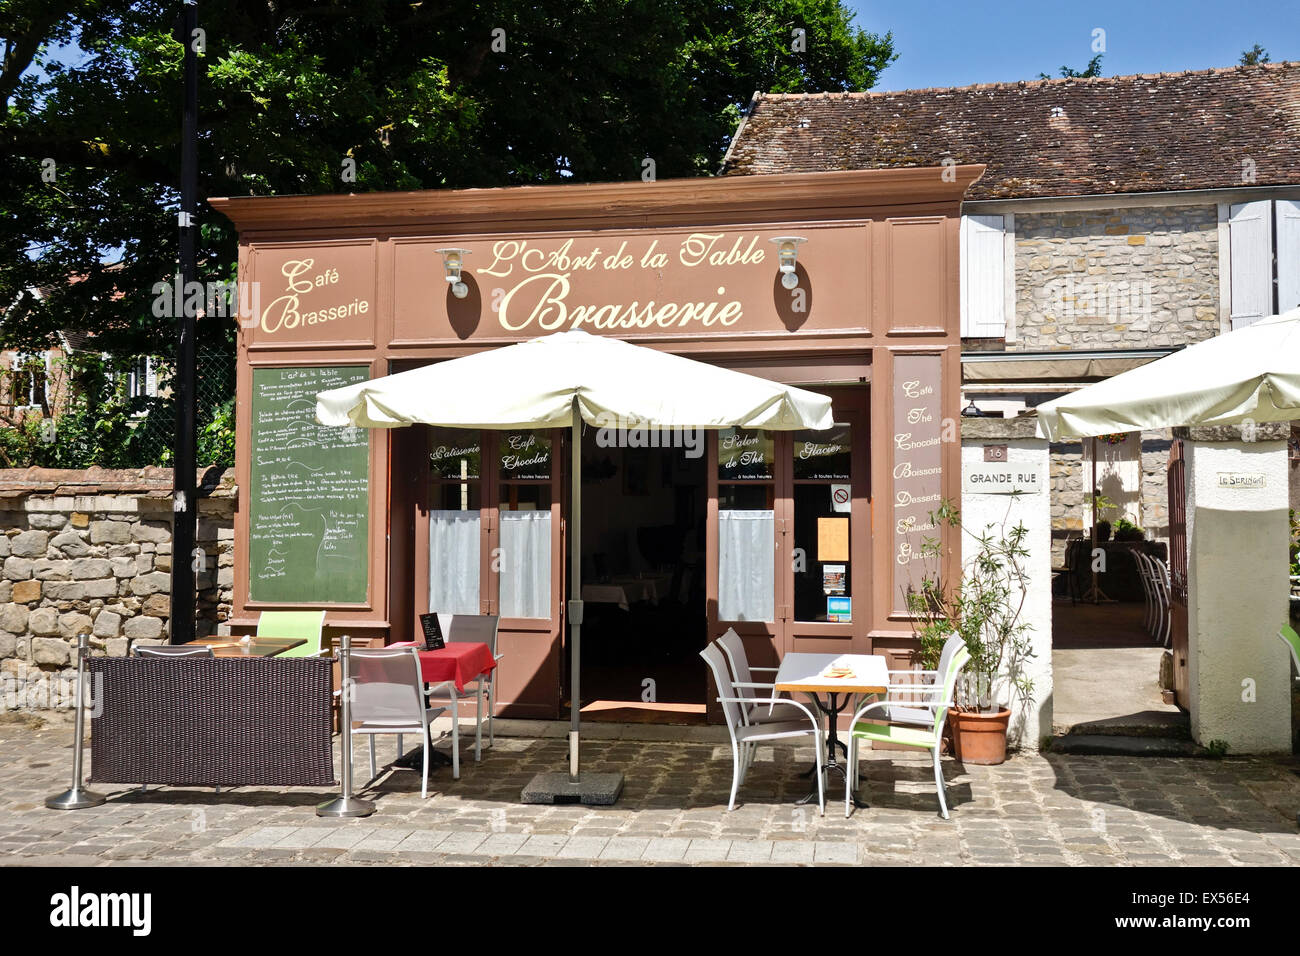 Barbizon france, pittoresque terrasse de restaurant, café Bistro français, Brasserie dans le village des artistes de Barbizon, Seine-et-Marne, France. Banque D'Images